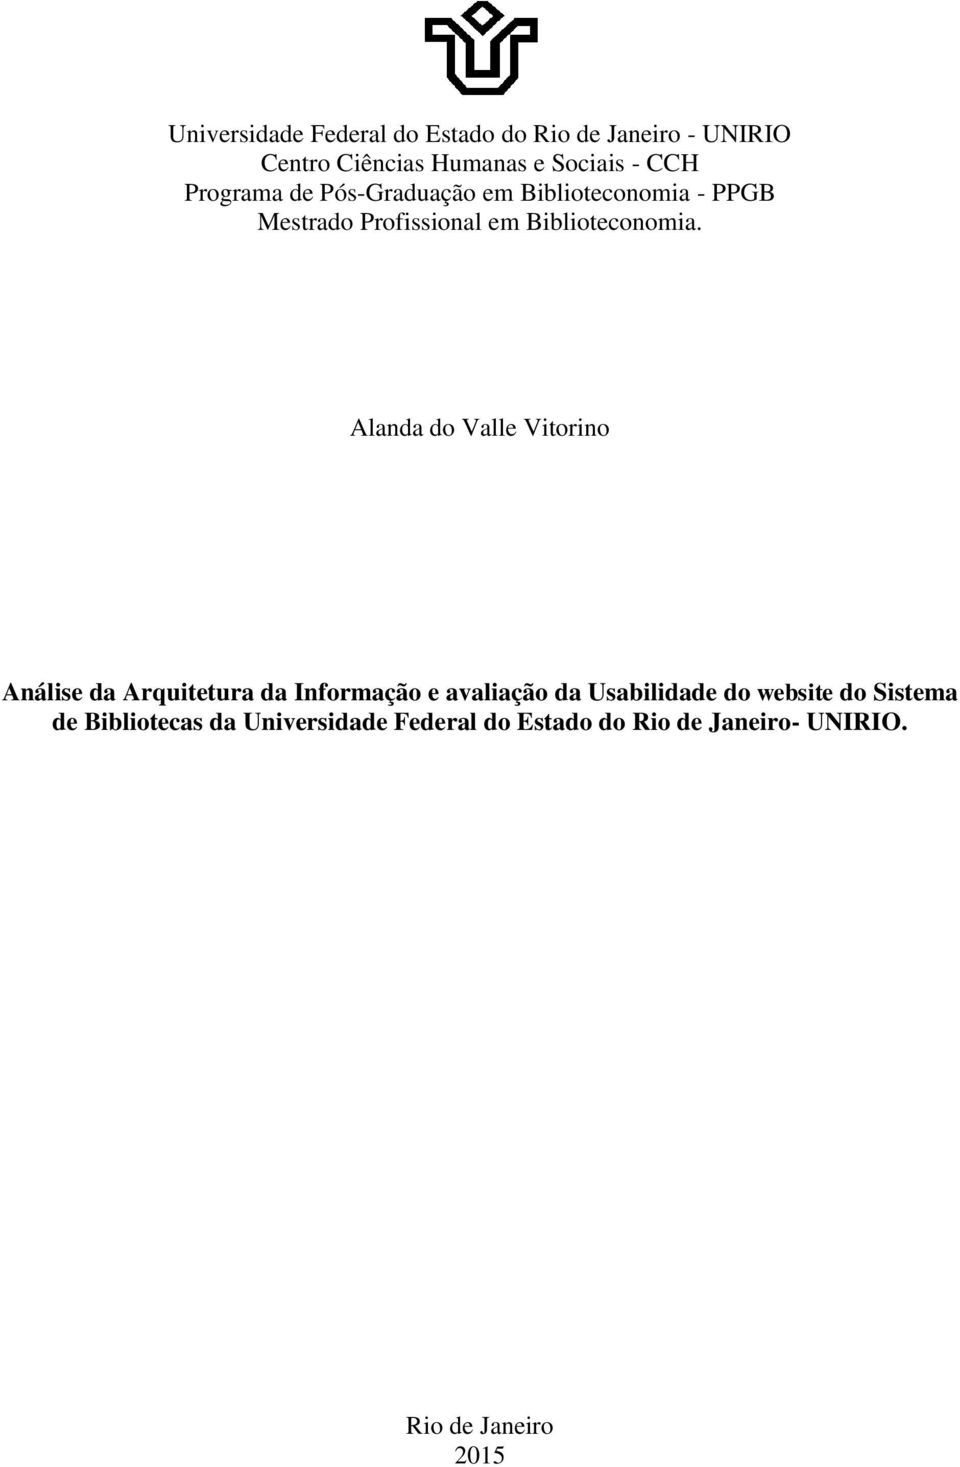 Alanda do Valle Vitorino Análise da Arquitetura da Informação e avaliação da Usabilidade do website